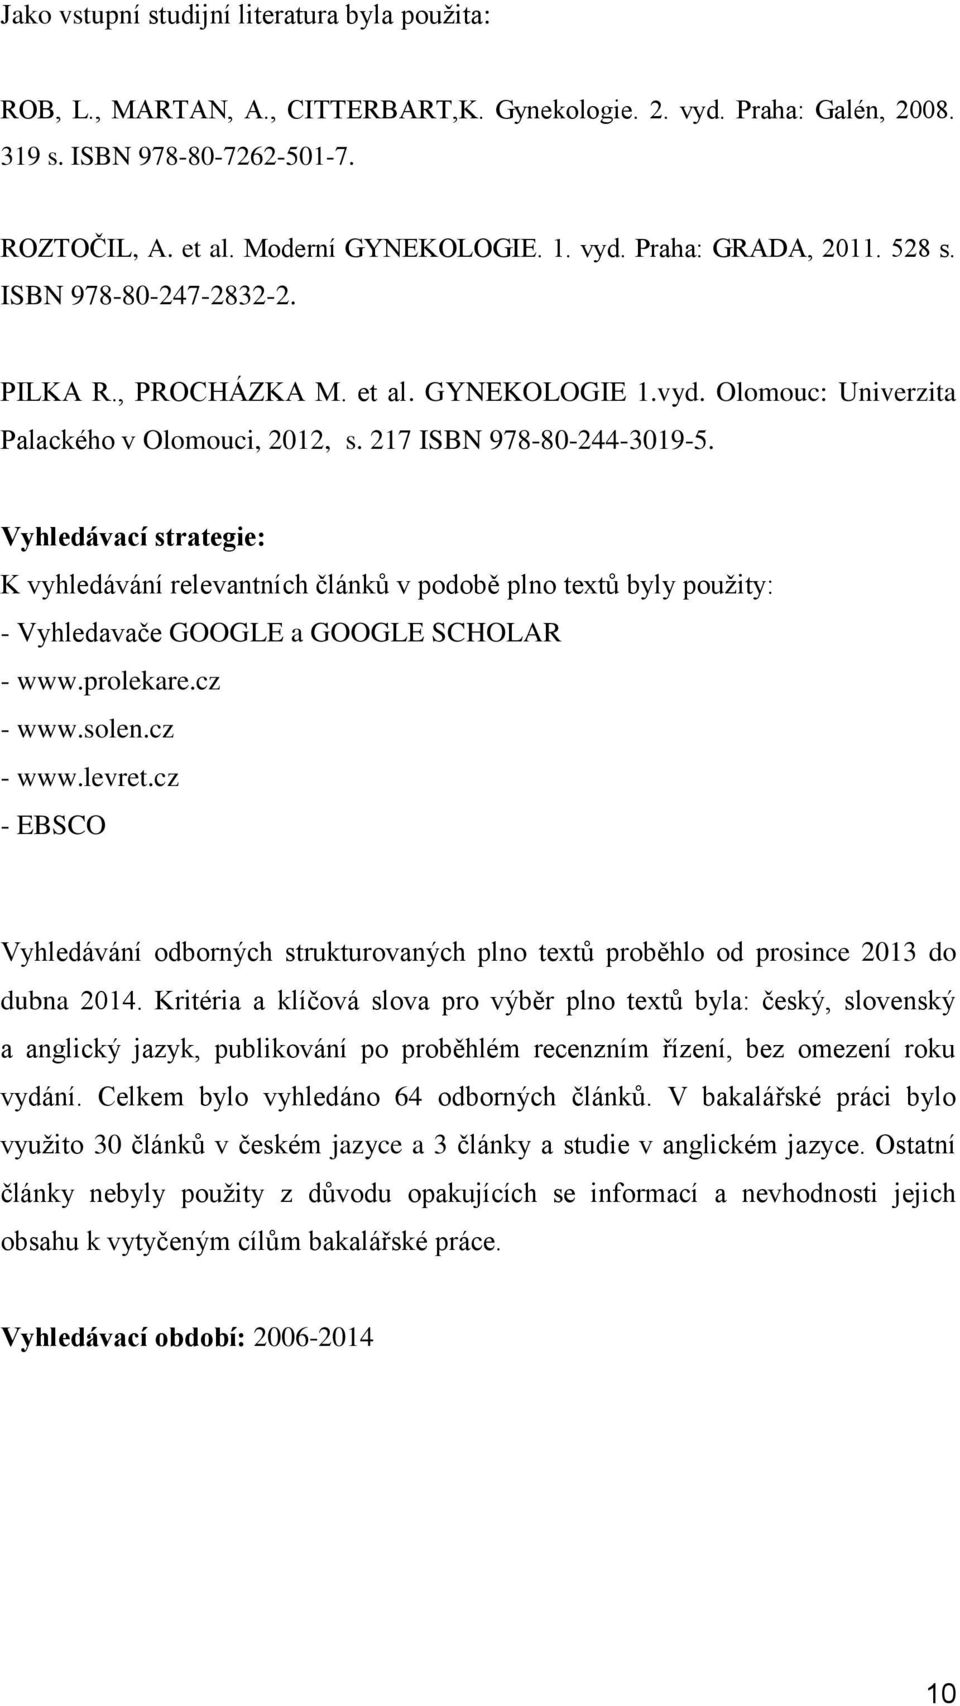 Vyhledávací strategie: K vyhledávání relevantních článků v podobě plno textů byly použity: - Vyhledavače GOOGLE a GOOGLE SCHOLAR - www.prolekare.cz - www.solen.cz - www.levret.